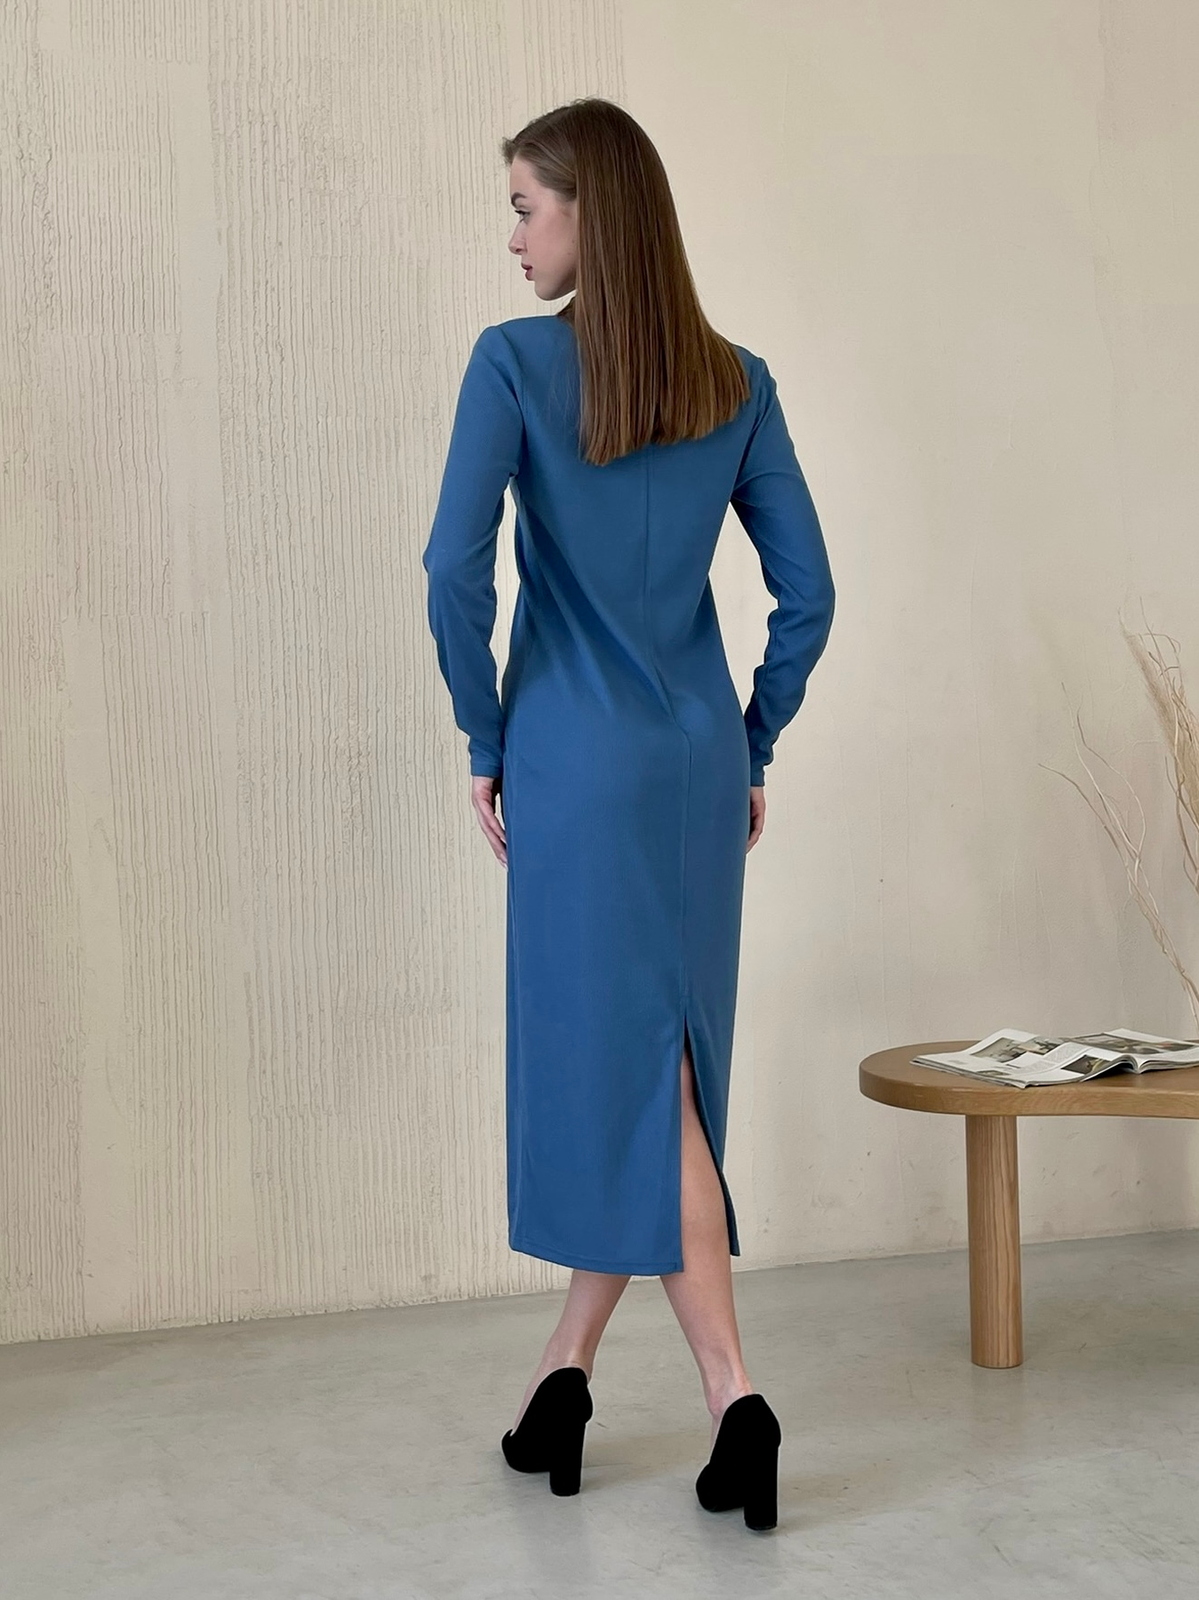 Купить Длинное синее платье в рубчик с длинным рукавом Merlini Венето 700001145, размер 42-44 (S-M) в интернет-магазине